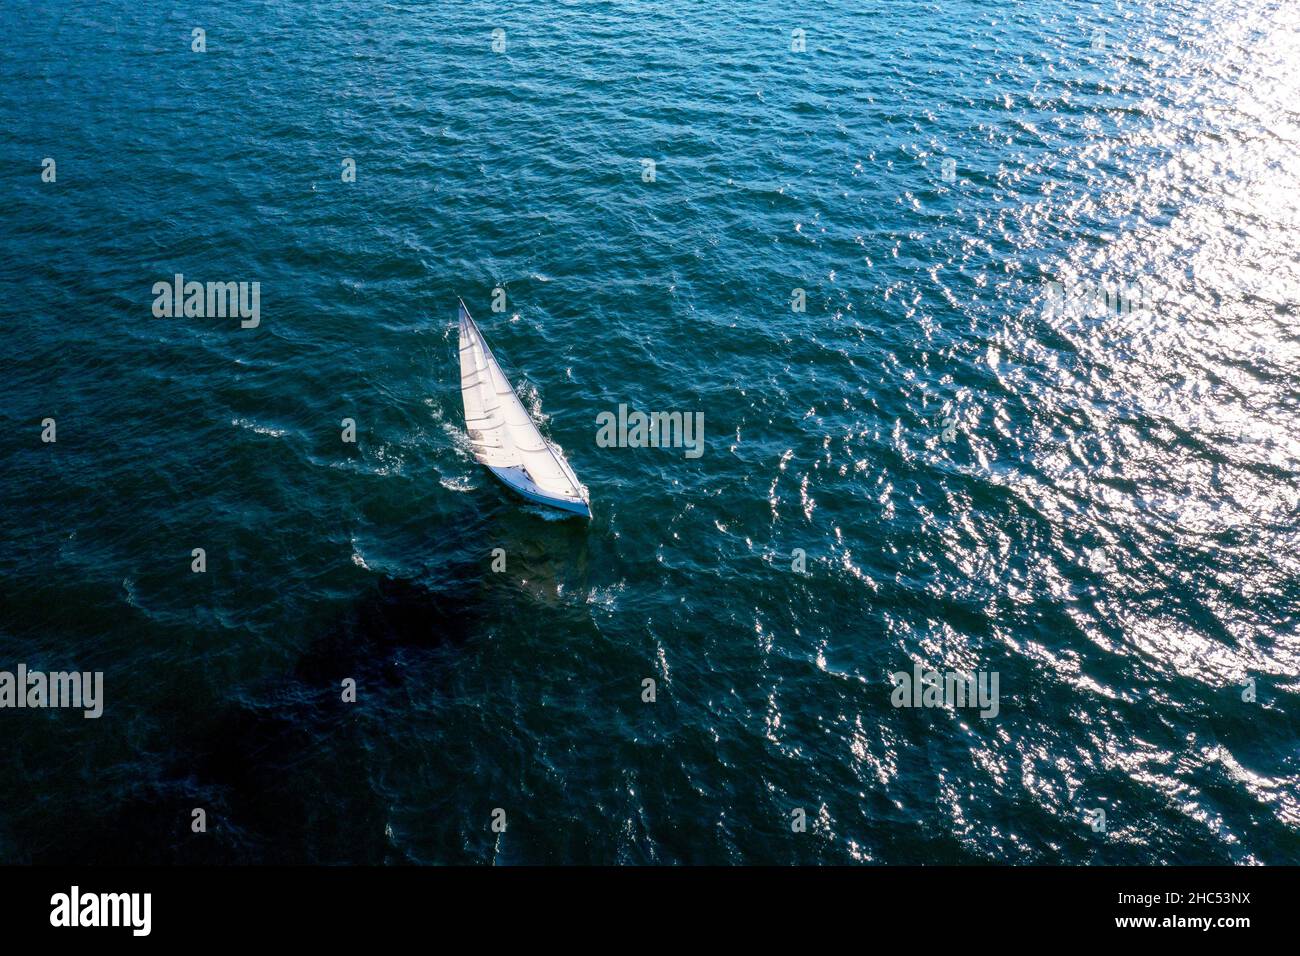 Sailing boat at sea, aerial view Stock Photo